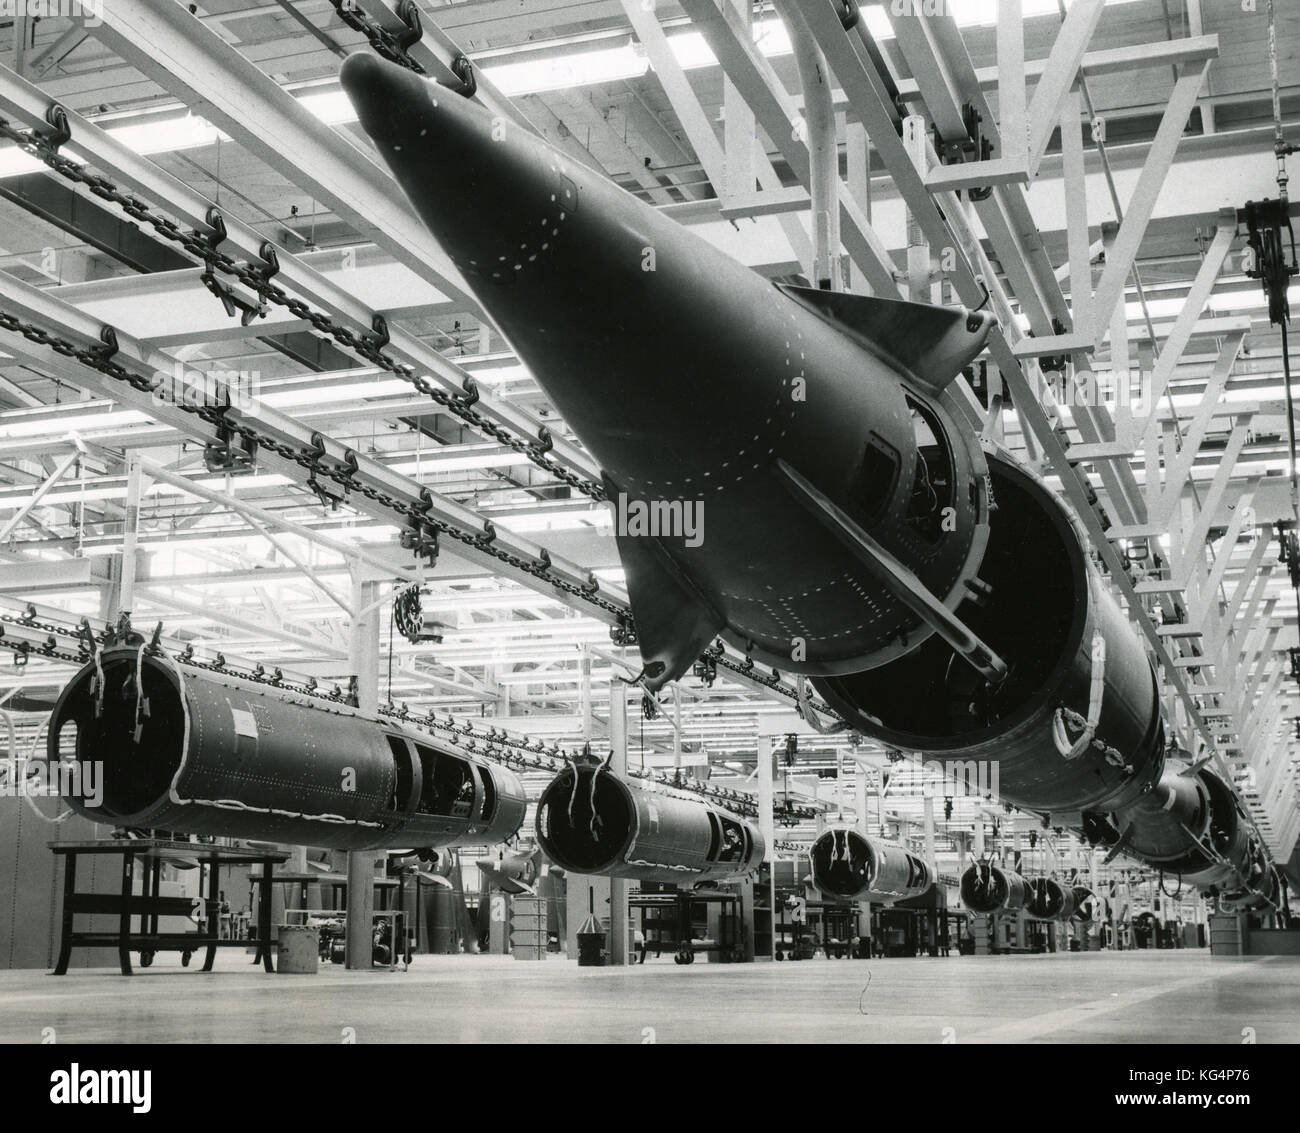 1958 - Charlotte, North Carolina - Förderband, wo die Endmontage der US Army Nike Hercules Raketen durch die Charlotte Aufteilung der Douglas Aircraft Company erreicht wird. Foto zeigt die Rakete Frames in der Produktion. Stockfoto